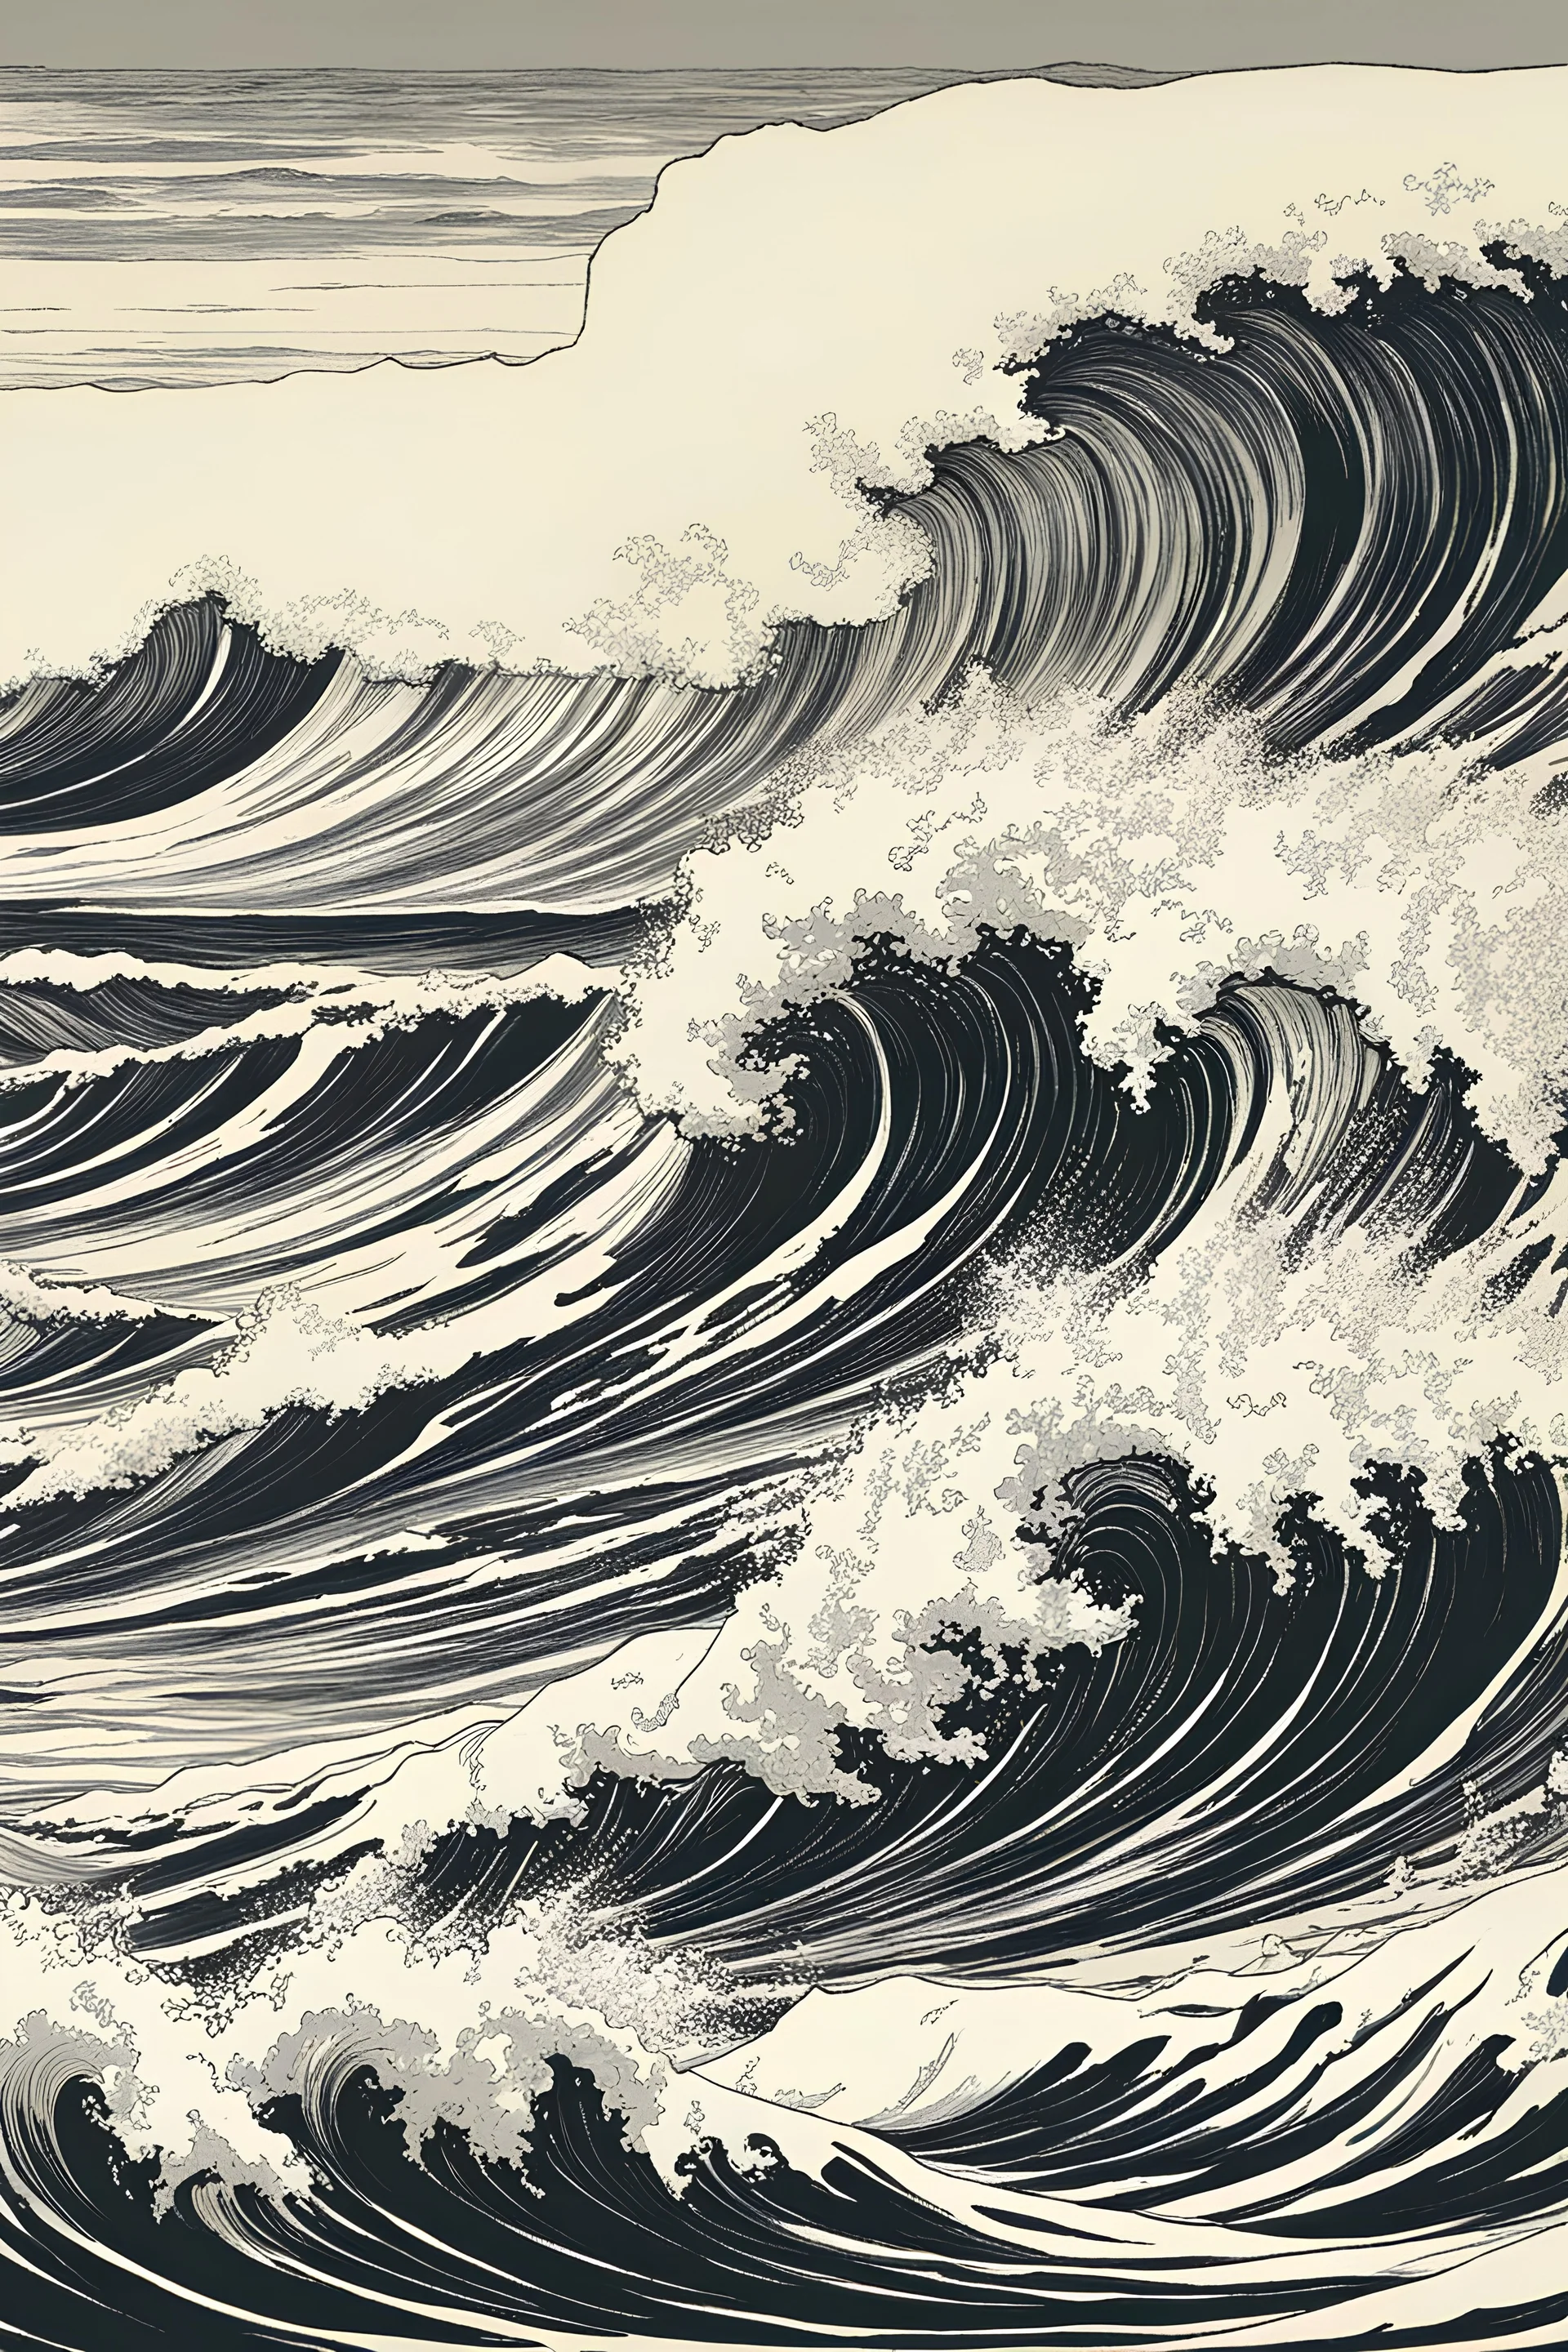 a storm tossed shoreline with pounding surf illustration by Yoji Shinkawa and Katsushika Hokusai, finely drawn and inked, 4k, symmetric, hyperdetailed